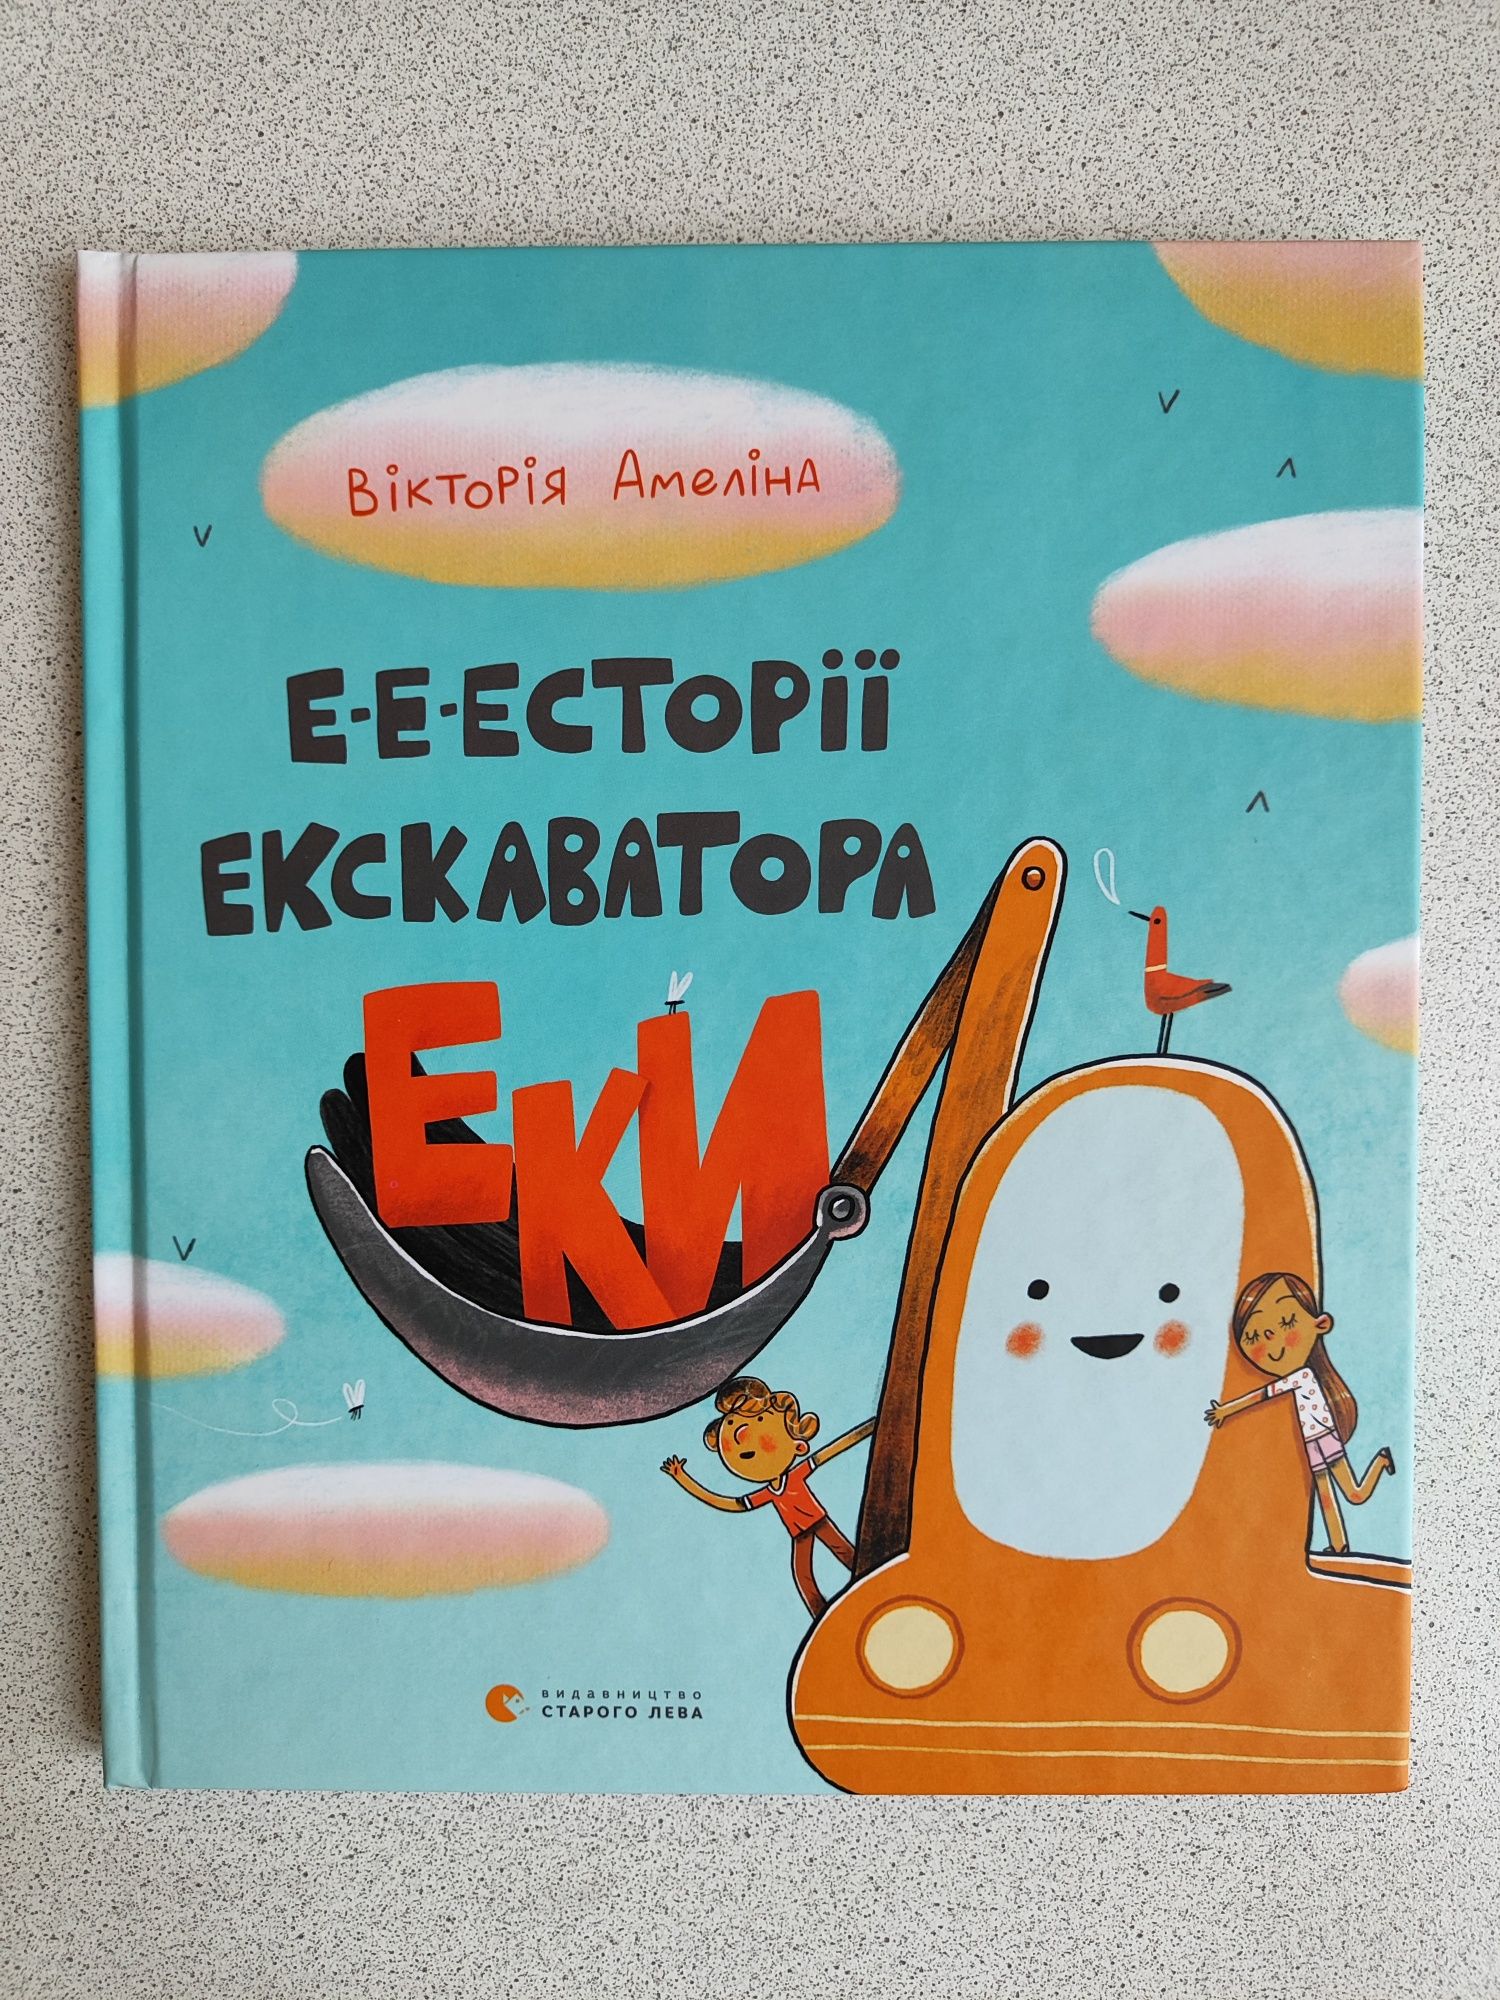 Книга Е-е-есторії екскаватора Еки
Вікторія Амеліна